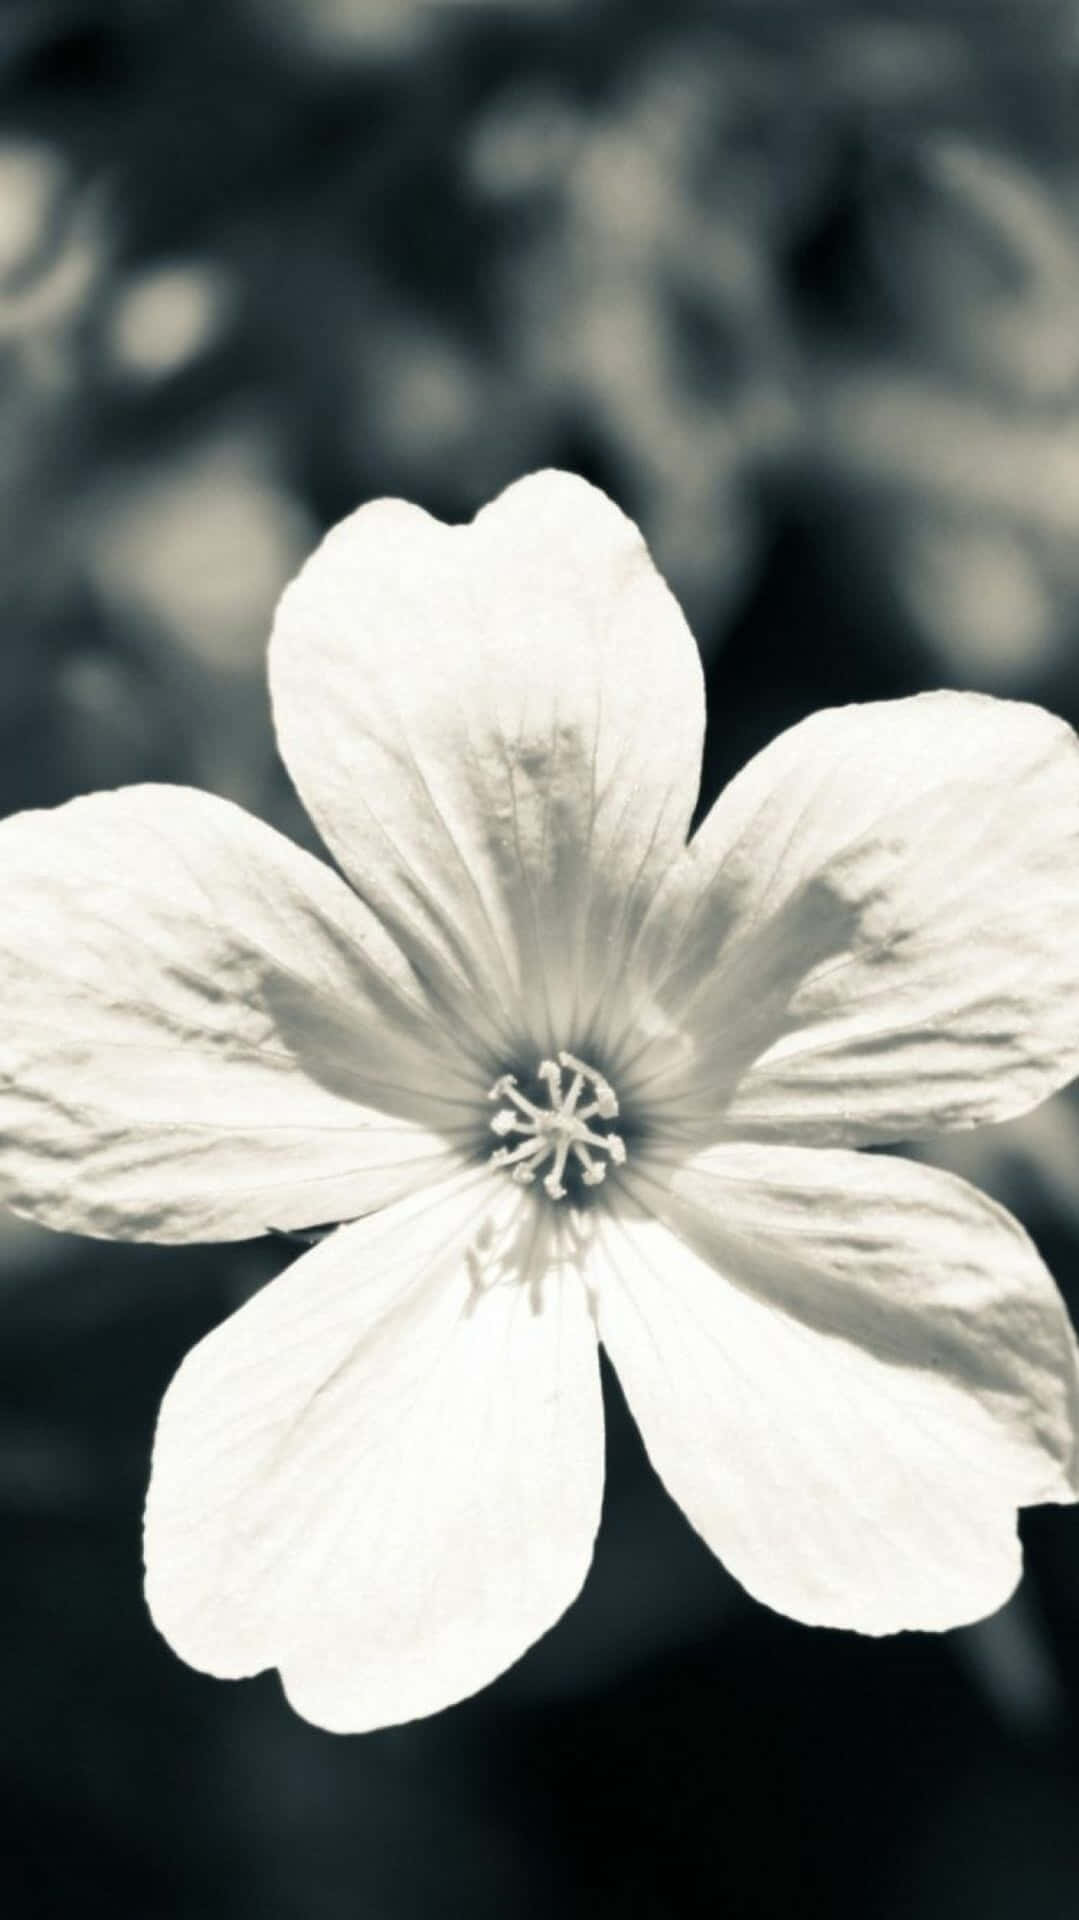 Eineexquisite Schwarz-weiße Blume In Voller Blüte, Die Die Schönheit Der Natur Zeigt. Wallpaper